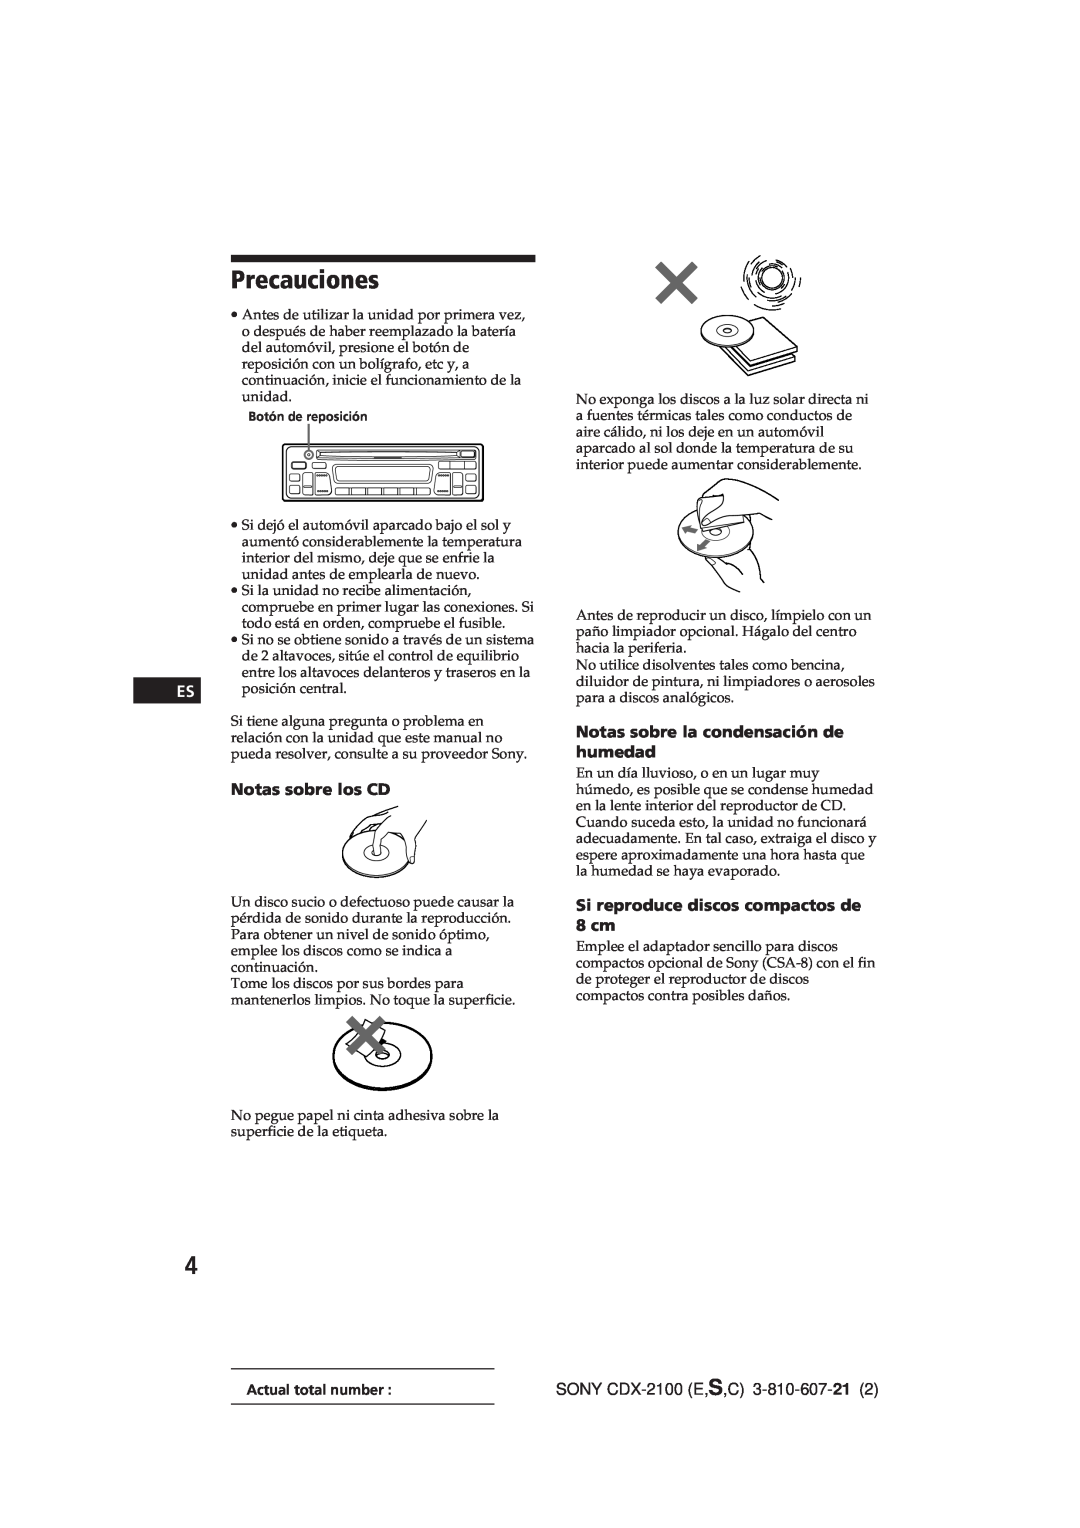 Sony manual Precauciones, Notas sobre los CD, Notas sobre la condensación de humedad, SONY CDX-2100E,S,C 